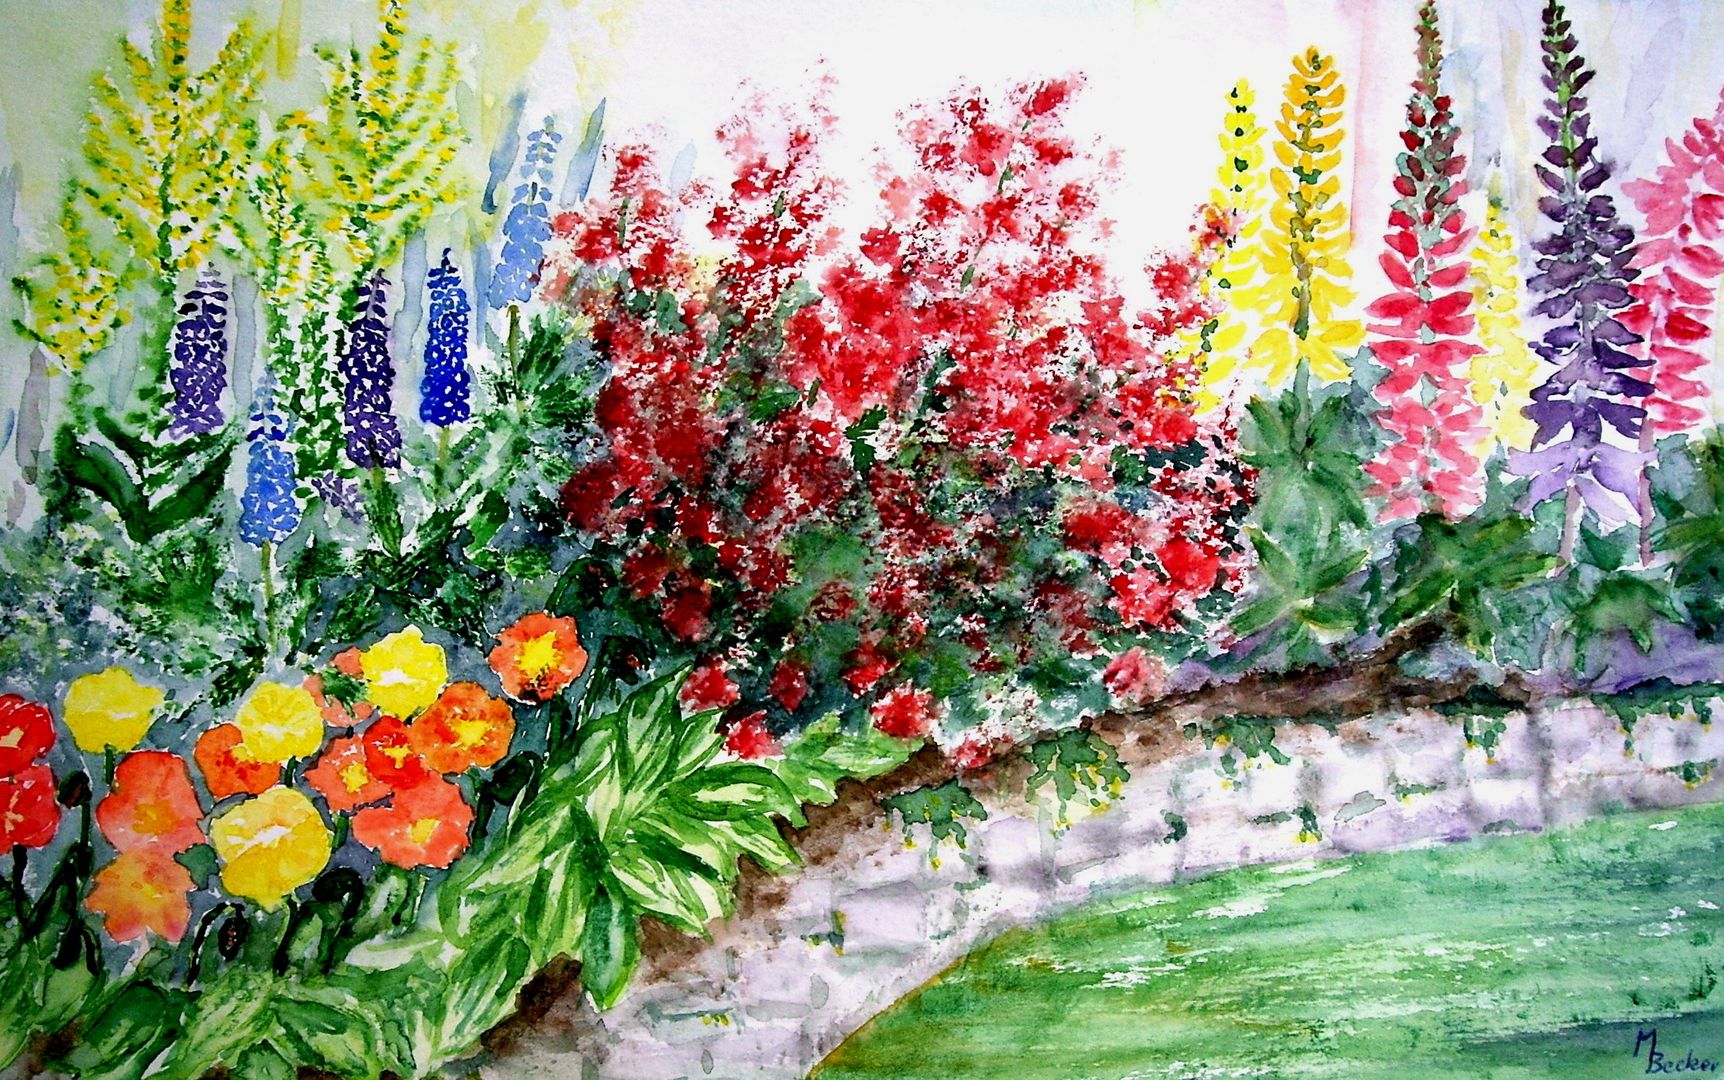 Das Aquarell zeigt einen naturgemäßen Garten mit unterschiedlichen Blumen // The drawing shows a natural garden with different flowers